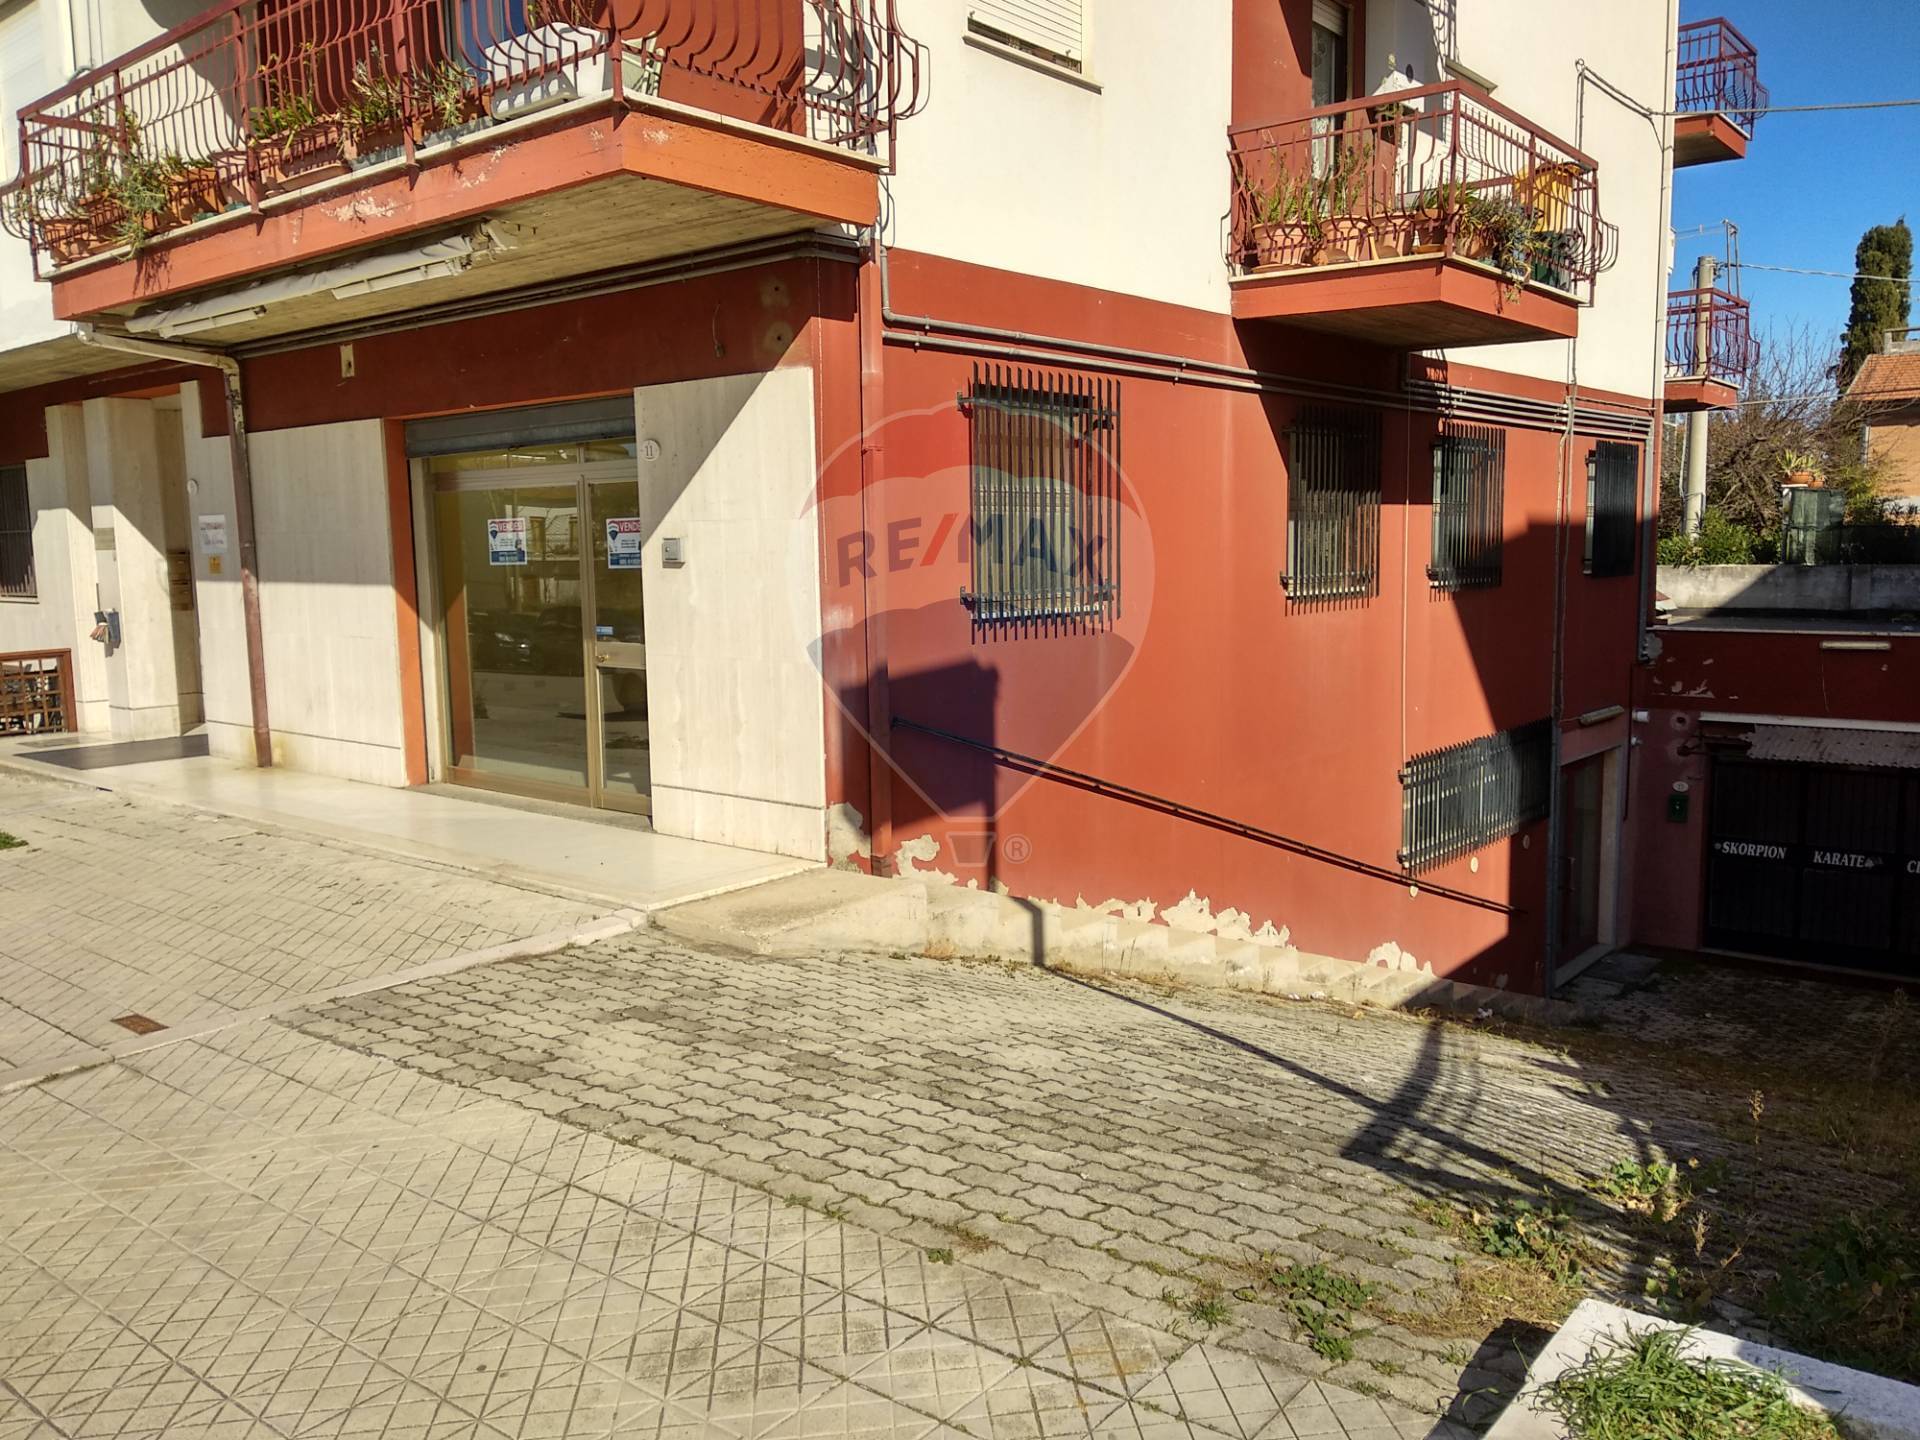 Magazzino in vendita a Fossacesia, 2 locali, prezzo € 40.000 | CambioCasa.it